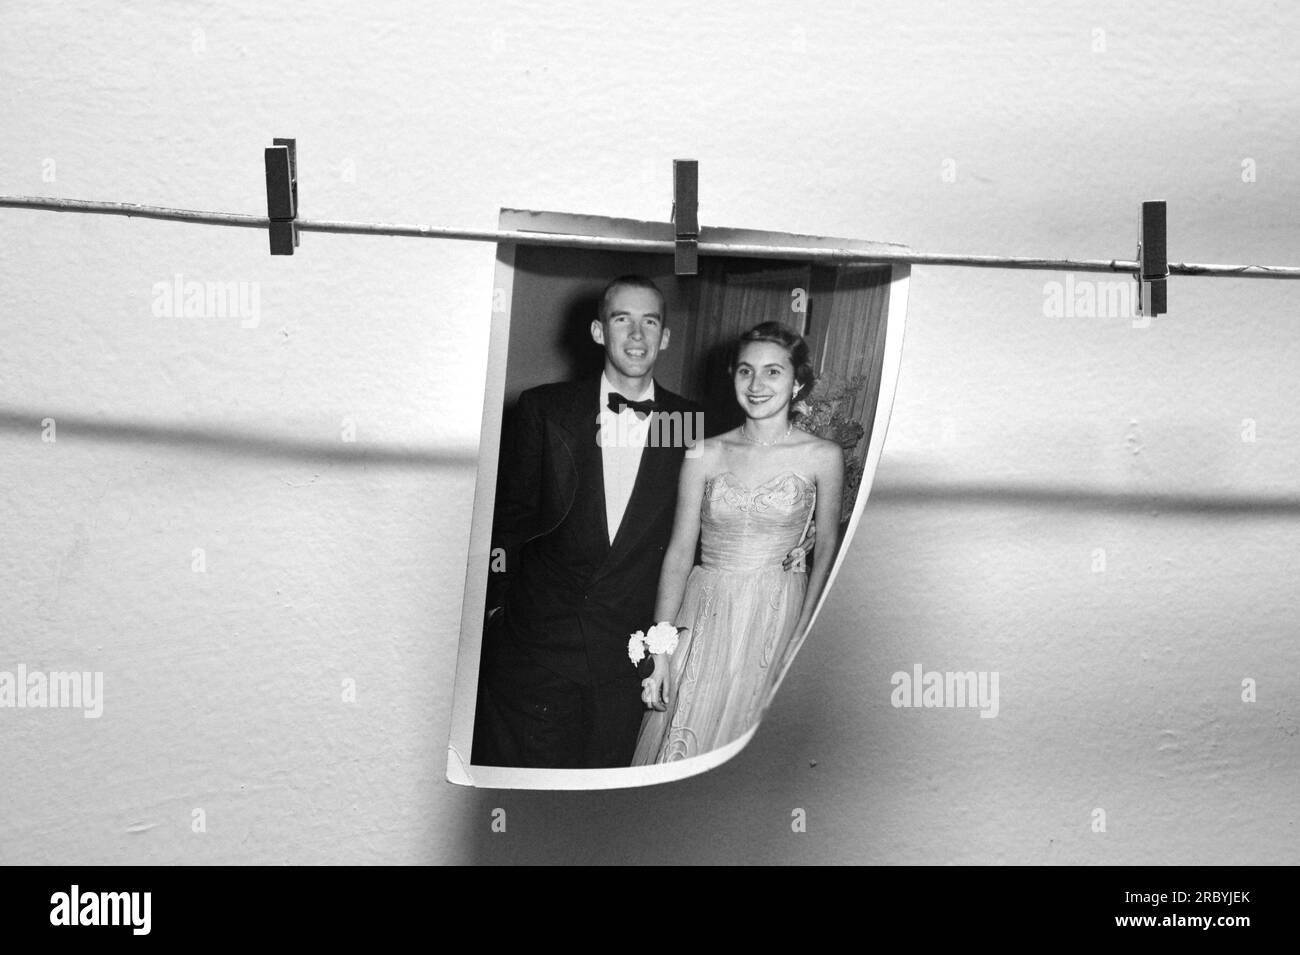 Un portrait de bal de 1950s d'un jeune couple américain habillé officiellement à vendre dans un magasin d'antiquités. Banque D'Images